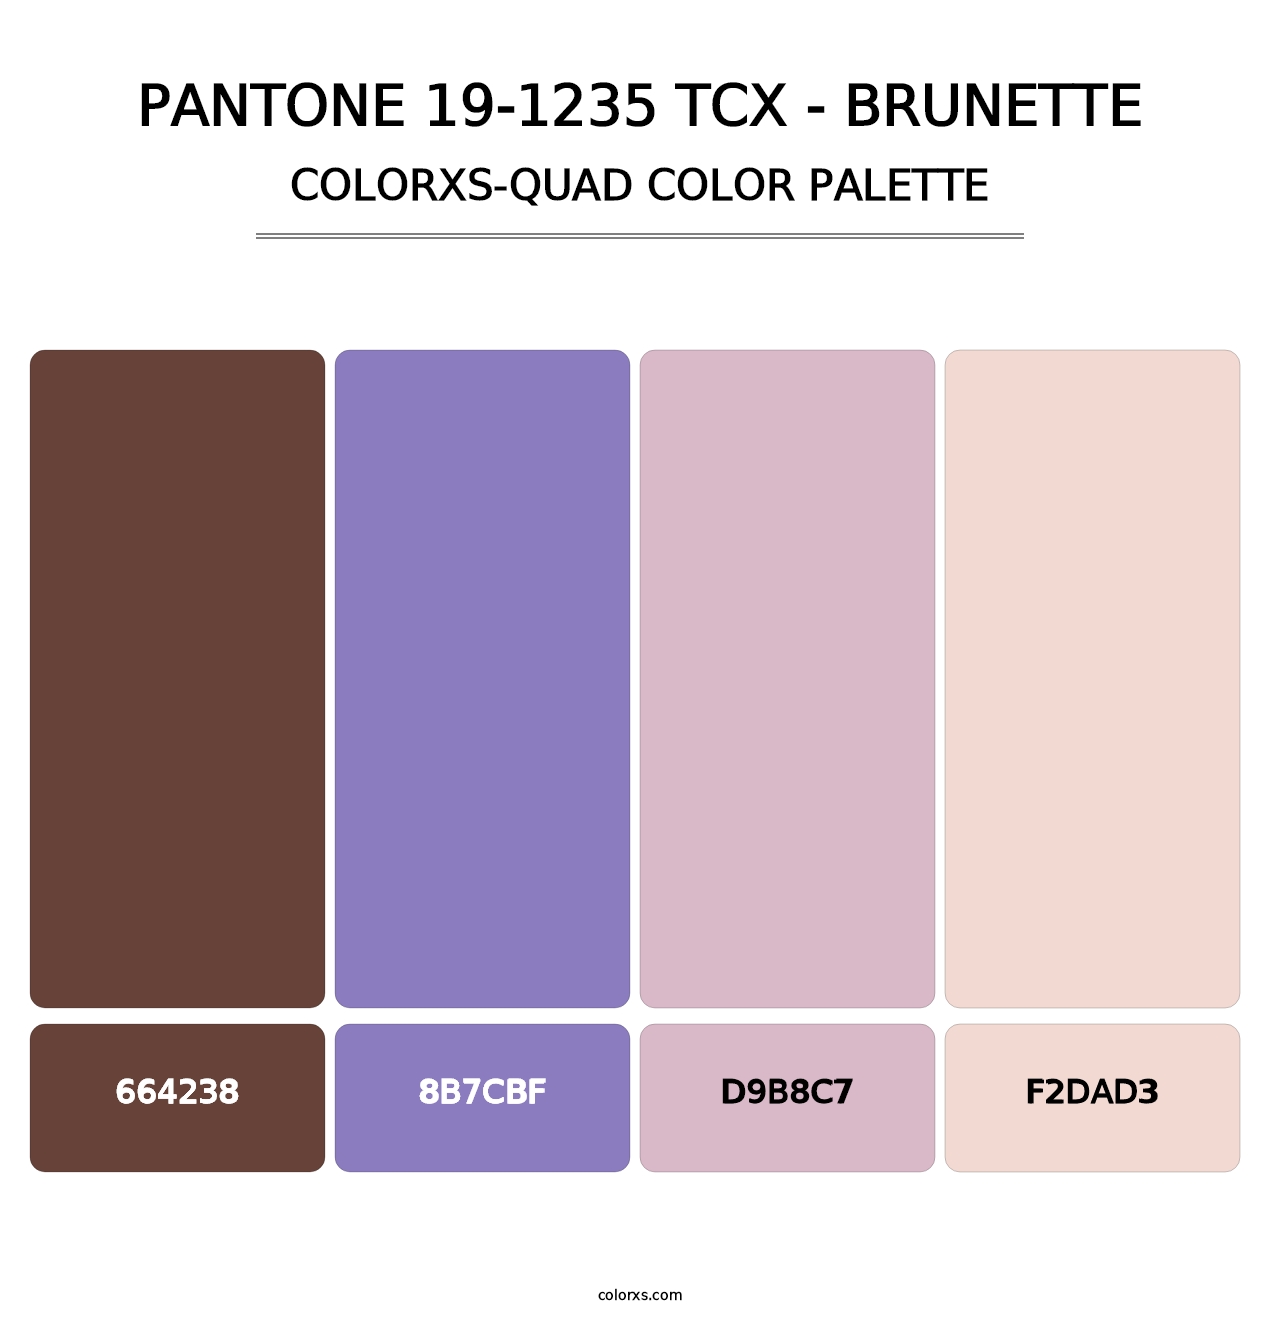 PANTONE 19-1235 TCX - Brunette - Colorxs Quad Palette